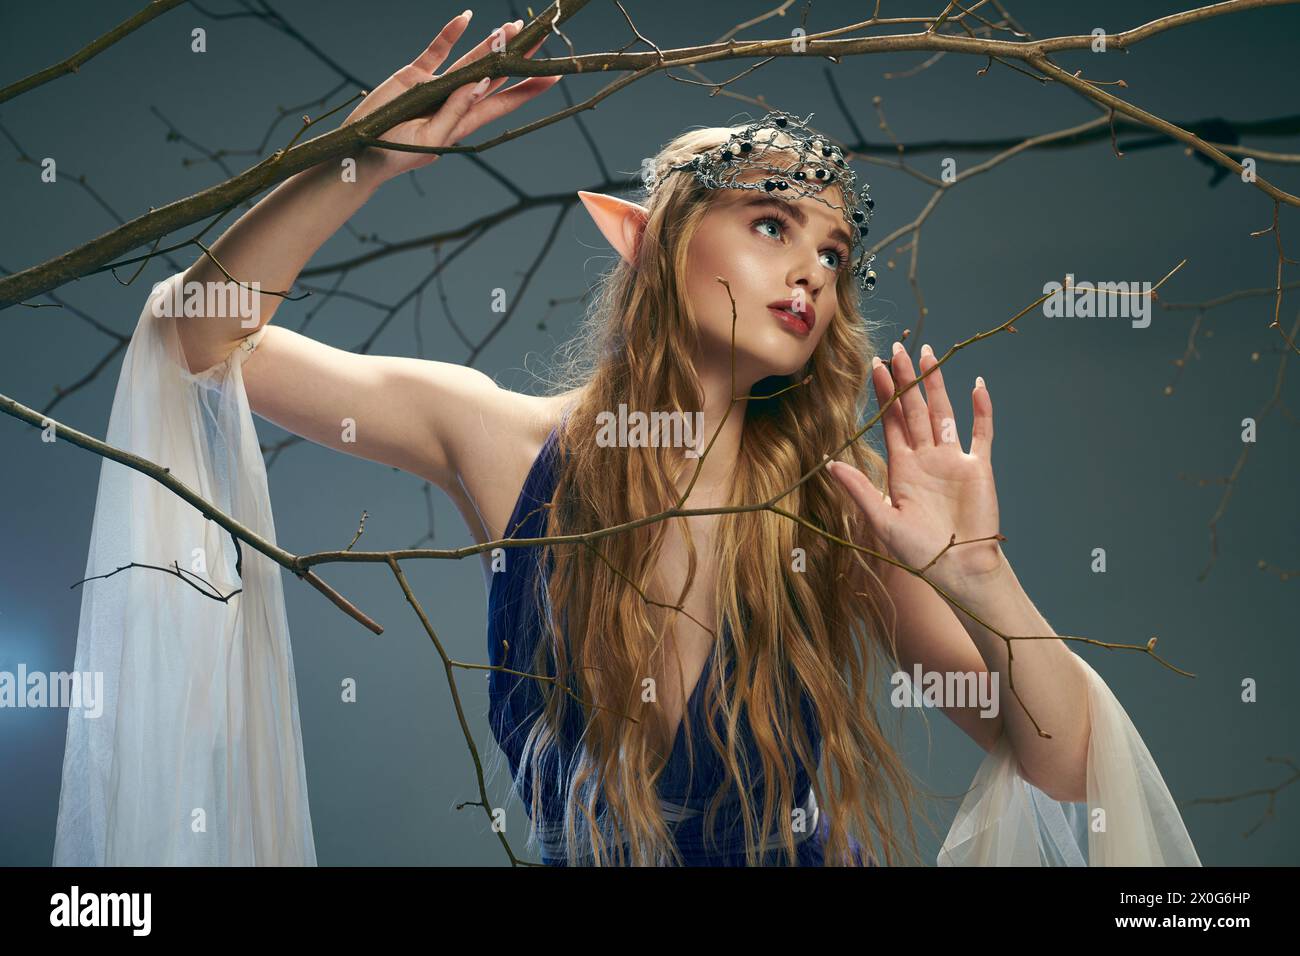 Une jeune femme portant une robe bleue fluide se tient gracieusement à côté d'un arbre dans un cadre fantastique magique. Banque D'Images